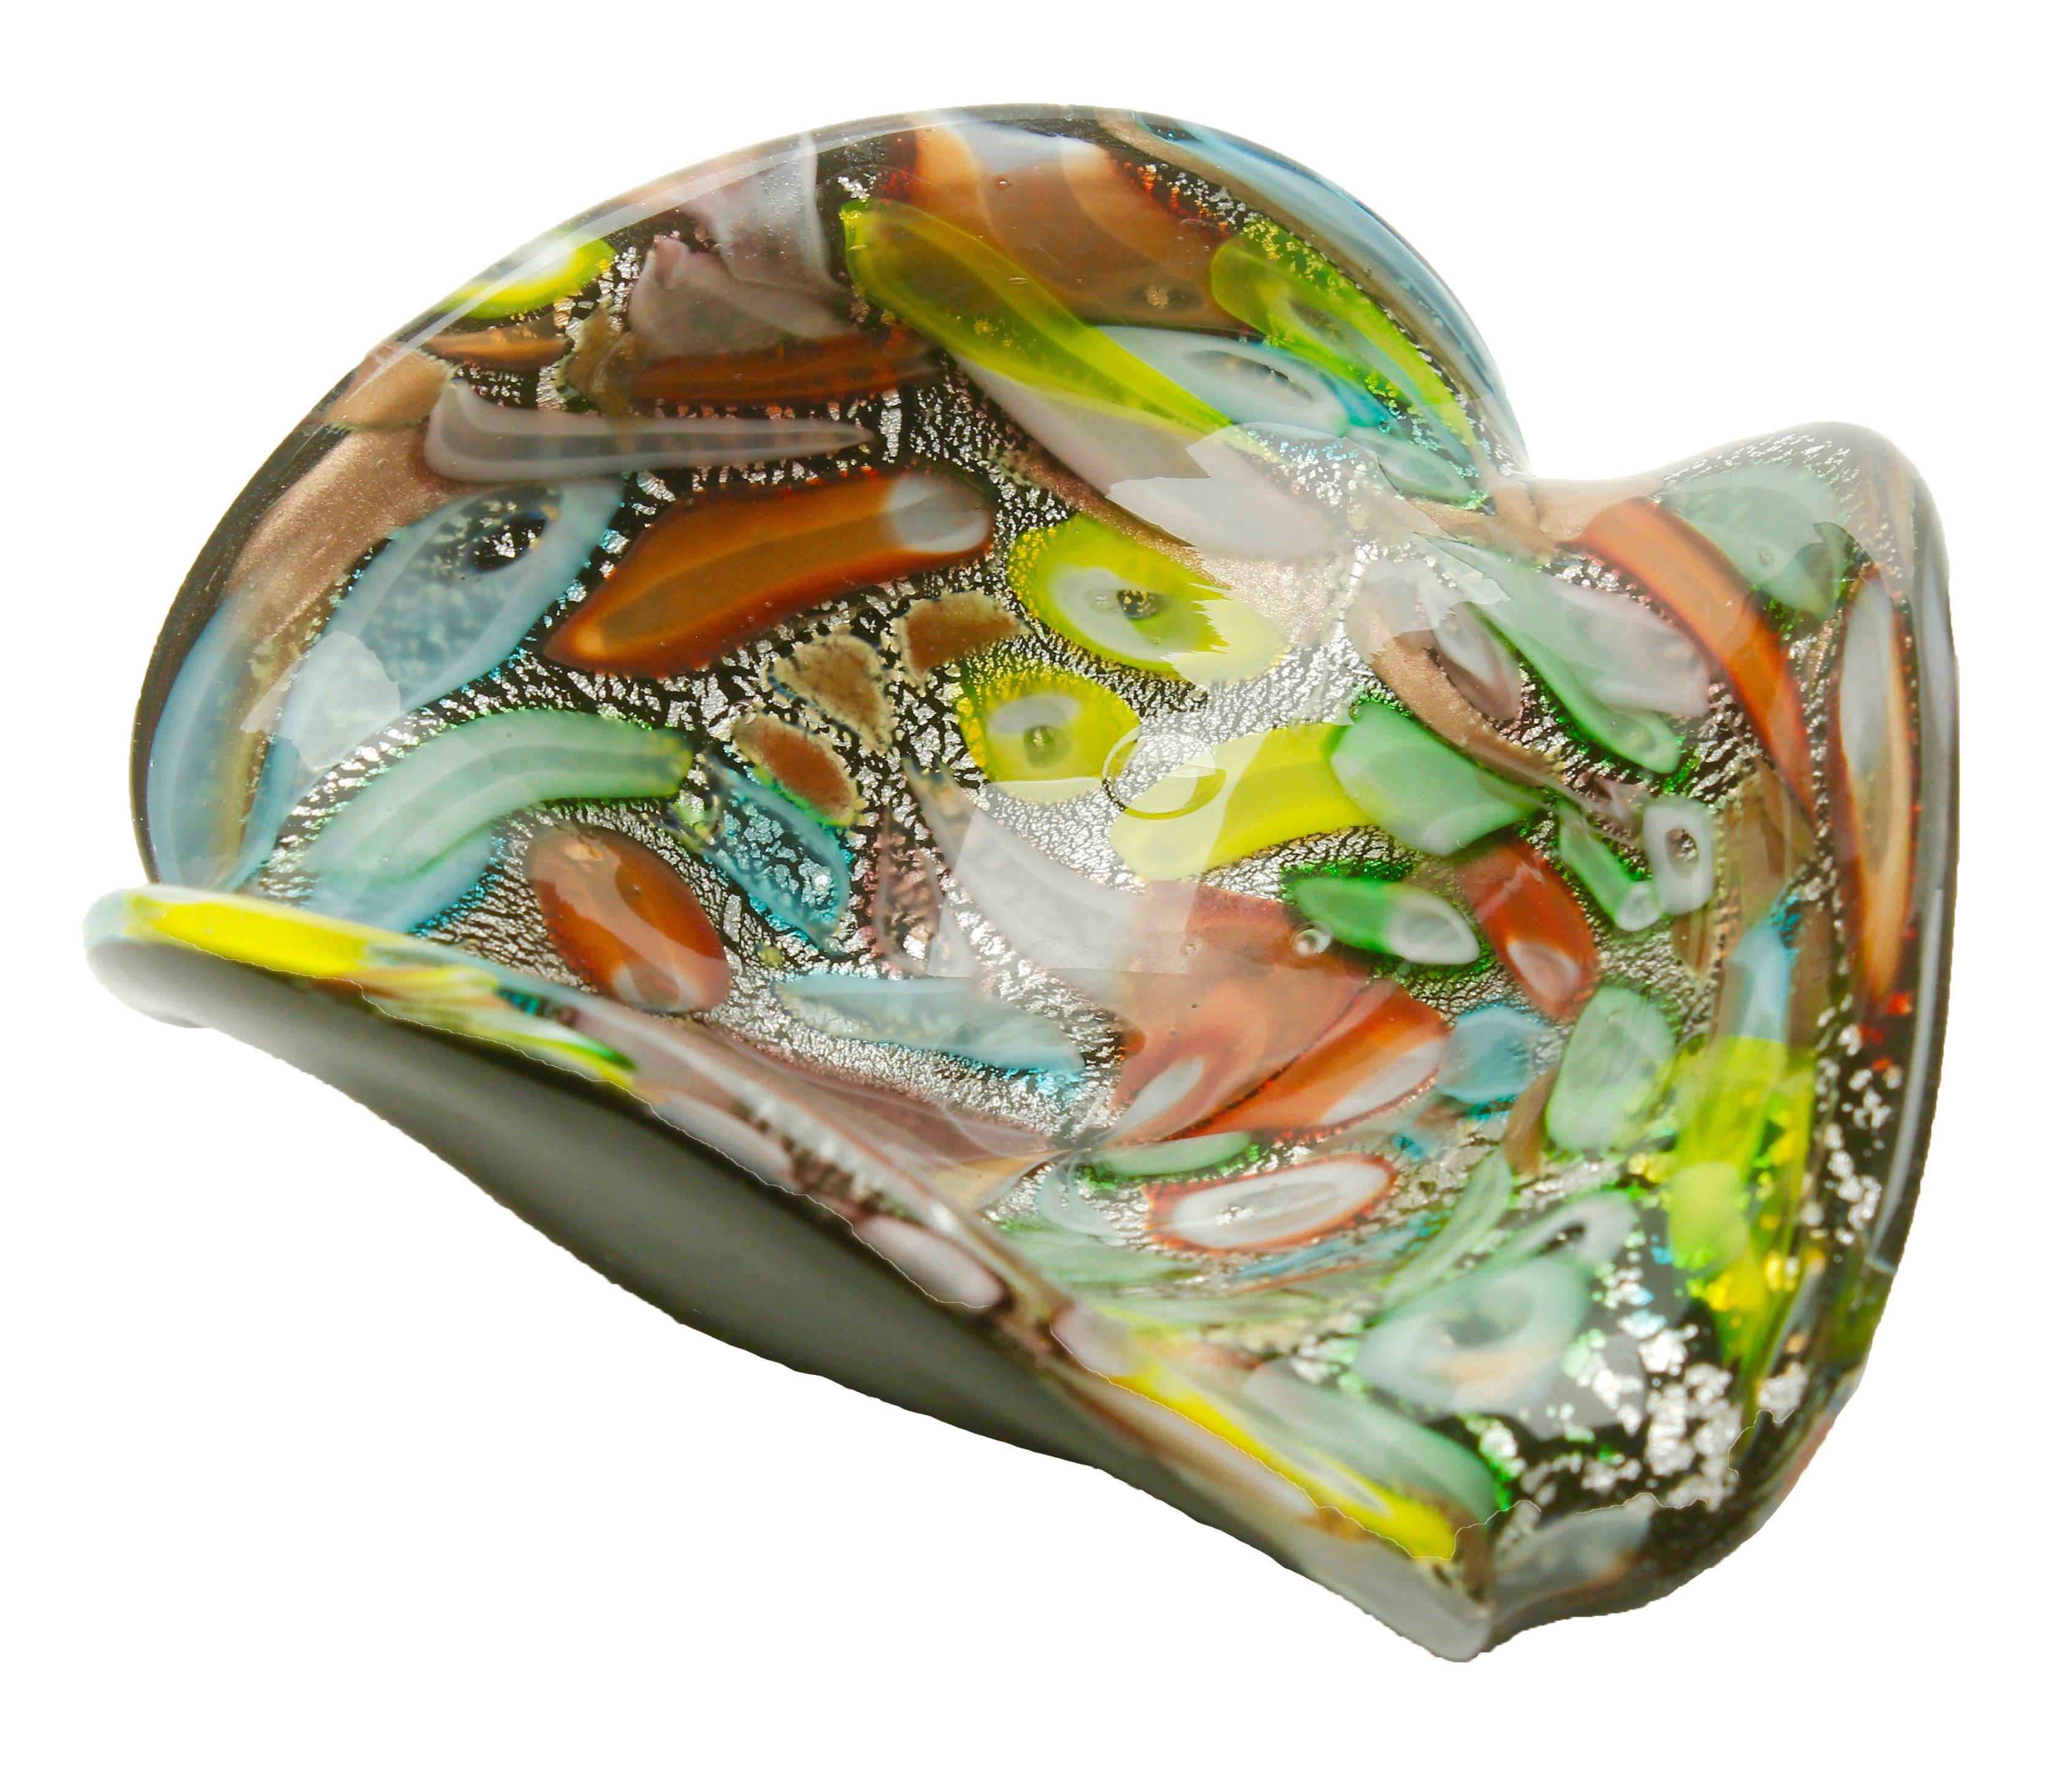 Amazing tutti frutti Murano art glass bowl by Dino Martens, 1960s.

Colorful Tutti Frutti Murano art glass bowl attributed to Dino Martens and Arte Vetreria Muranese.
Zanfirico and latticino techniques in pastel colors, silver and copper